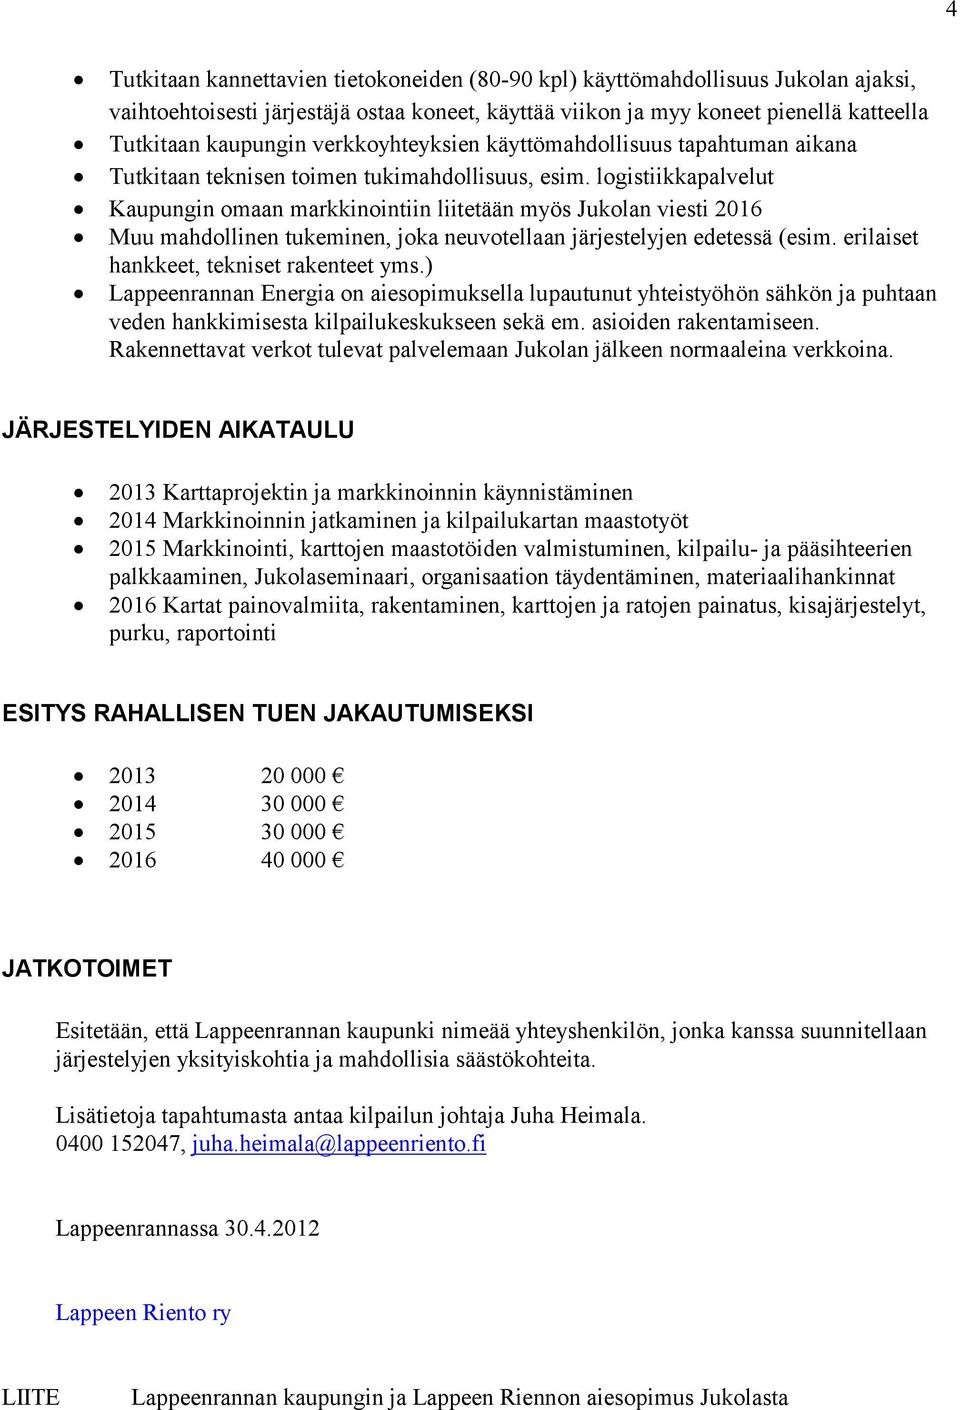 logistiikkapalvelut Kaupungin omaan markkinointiin liitetään myös Jukolan viesti 2016 Muu mahdollinen tukeminen, joka neuvotellaan järjestelyjen edetessä (esim.